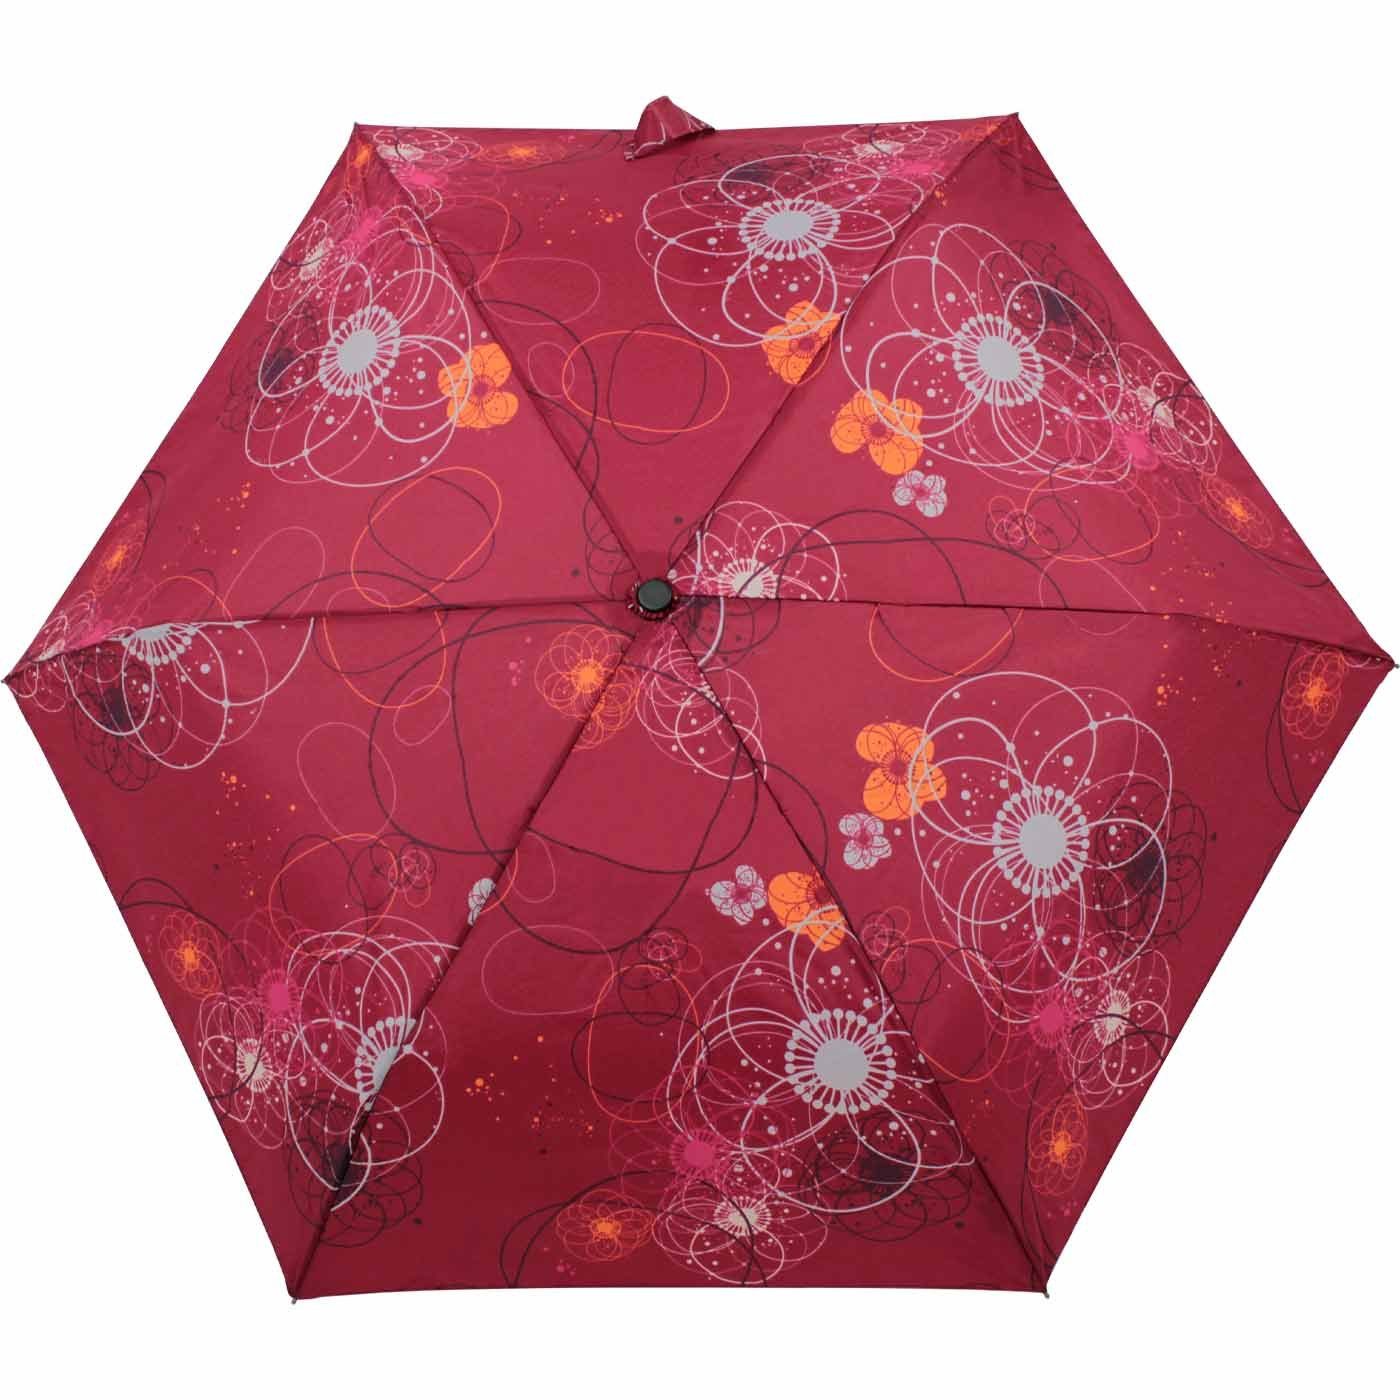 doppler® Taschenregenschirm Super-Mini Havanna und kleiner Damen in besonders jede bordeaux-rot passt Schirm, - Tasche Barcelona, leichter